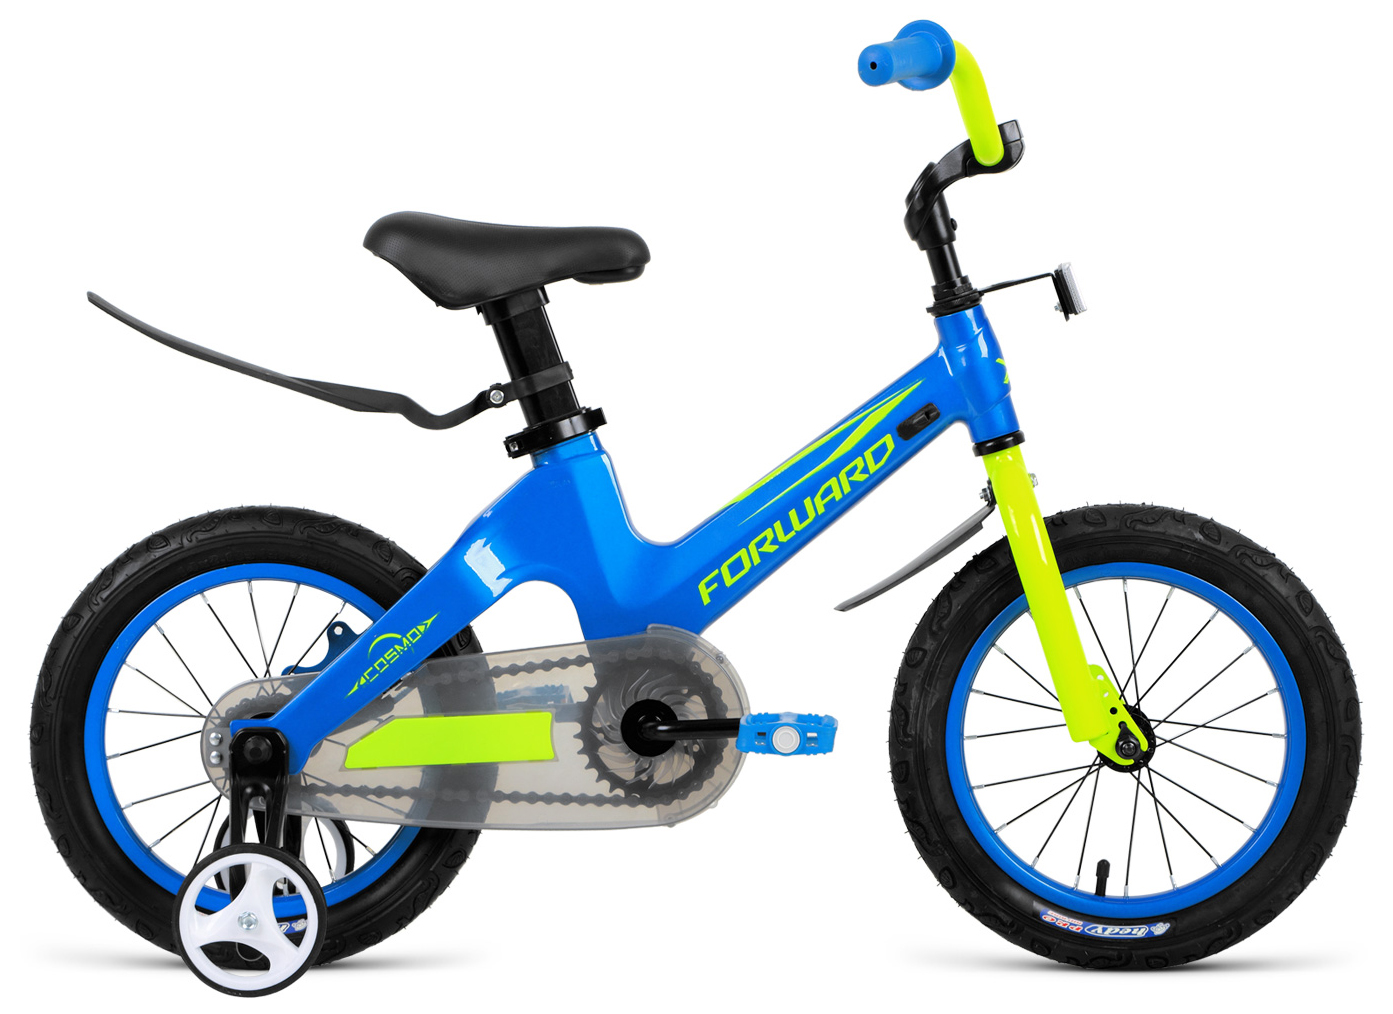  Отзывы о Детском велосипеде Forward Cosmo 12 2020